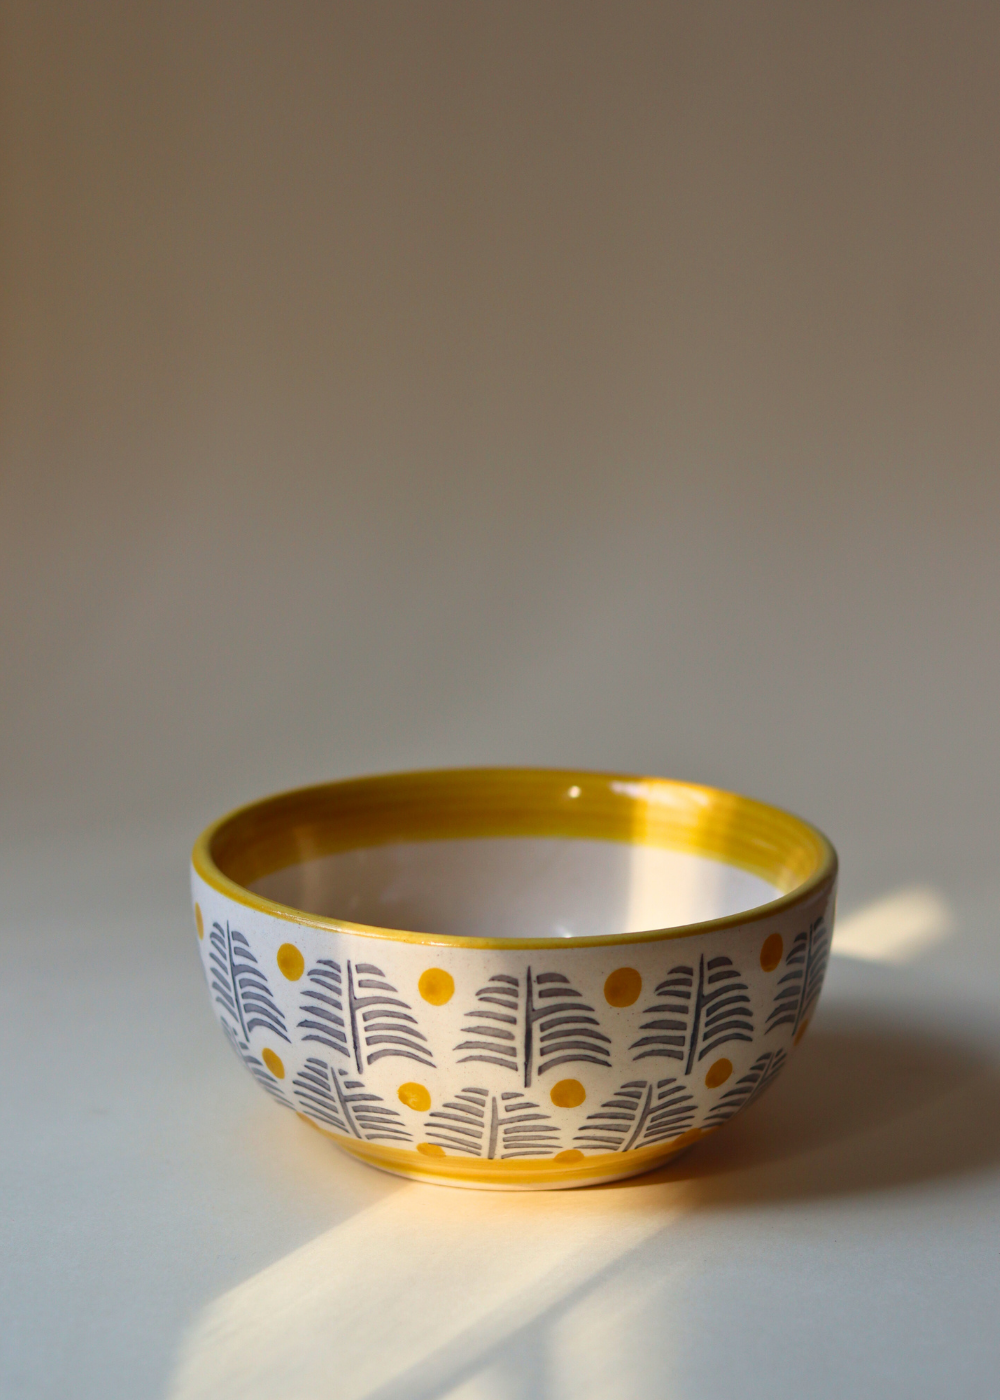 Handmade ceramic forest fetish bowl